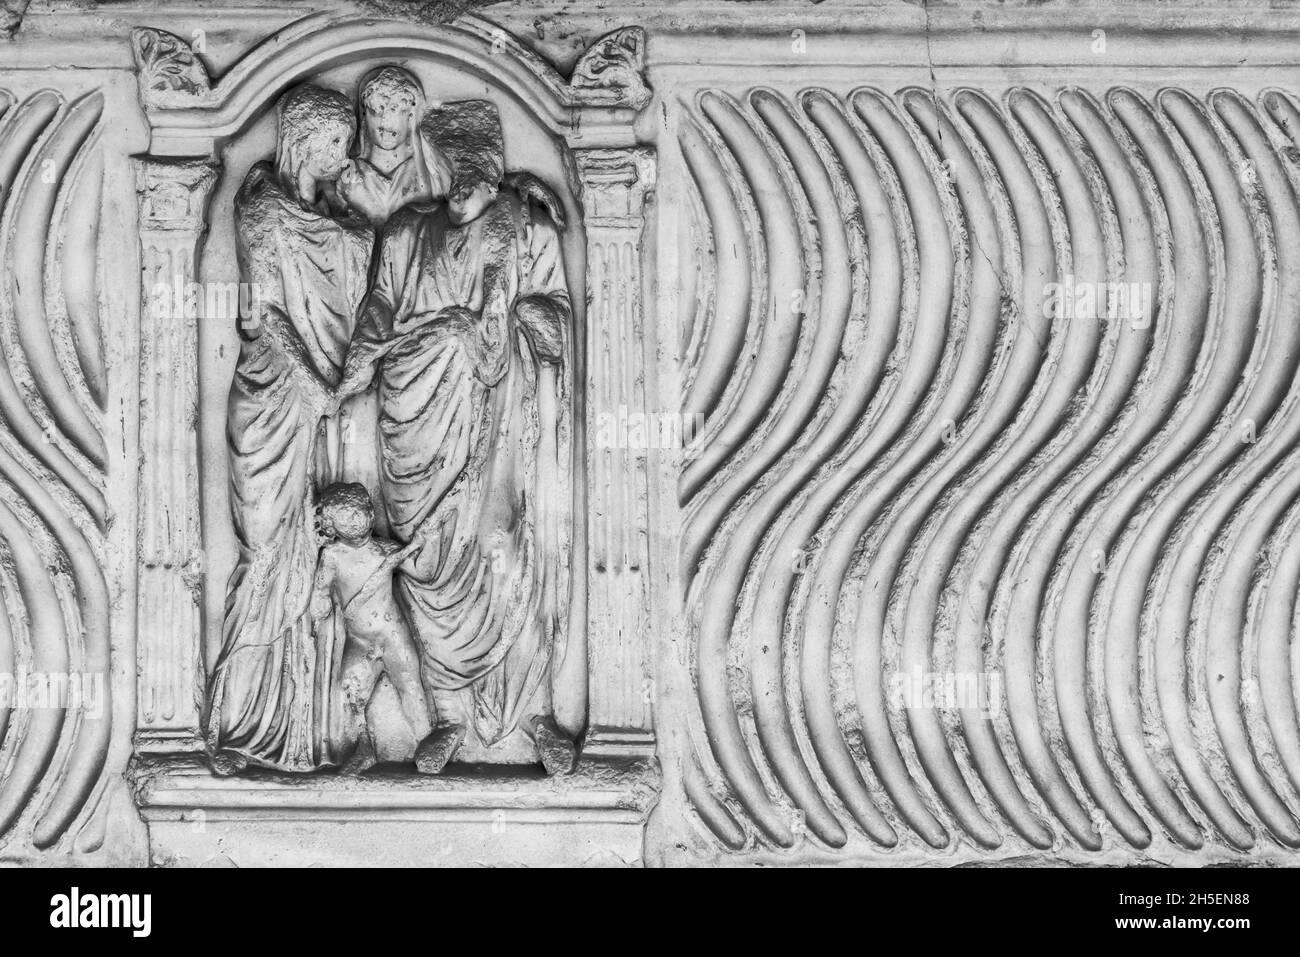 Photo en noir et blanc de sculptures anciennes sculptées sur un mur en marbre représentant un groupe de femmes romaines réunies avec un enfant Banque D'Images